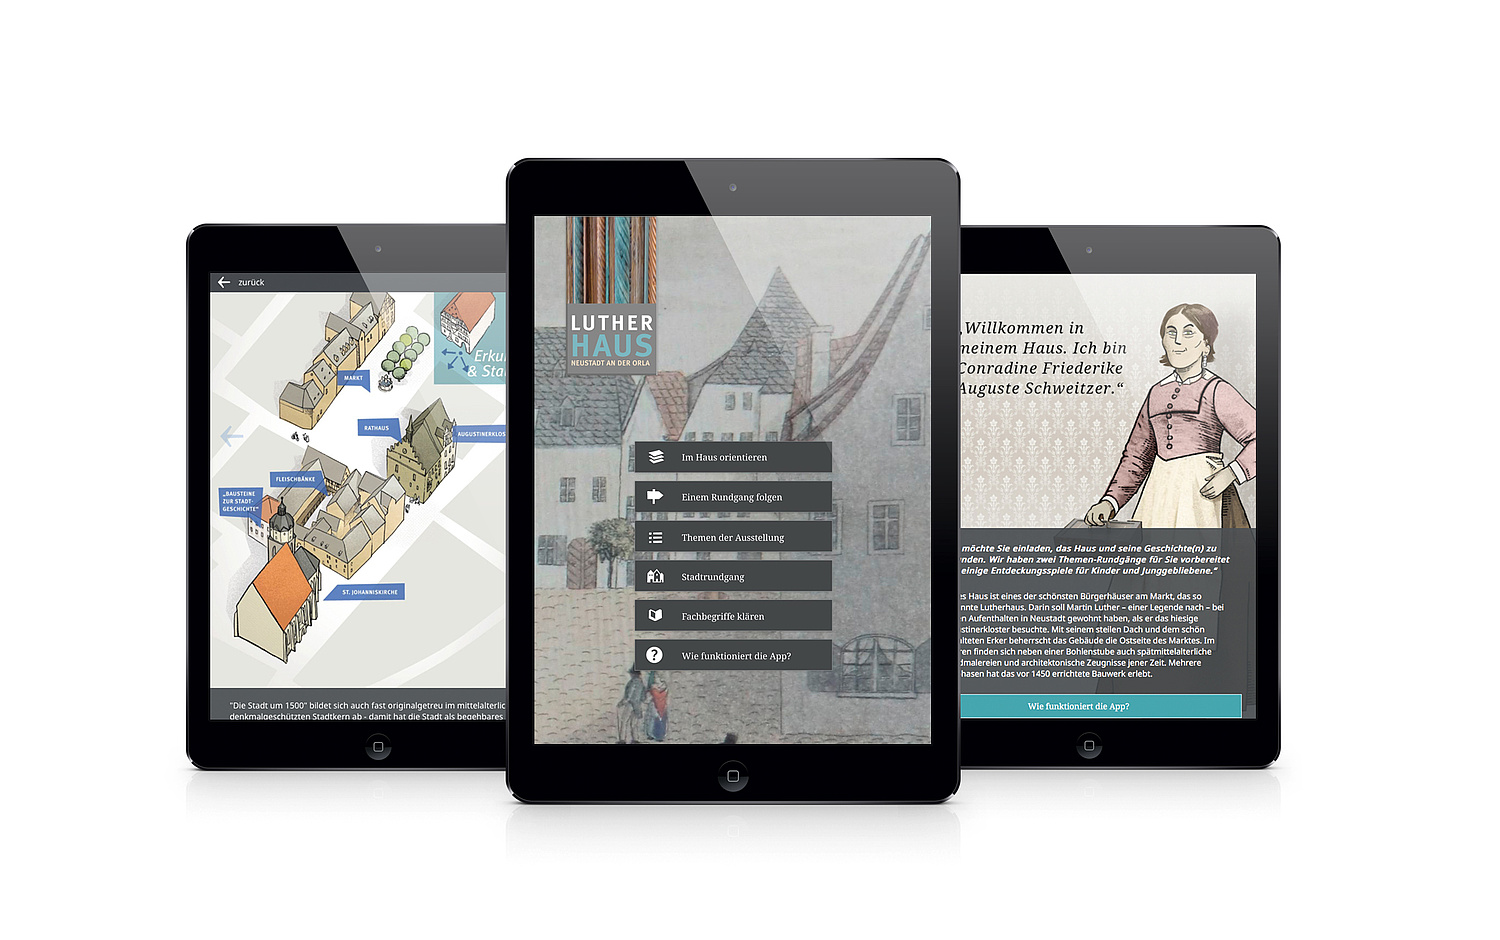 Drei Ansichten der App zur Stadtgeschichte, Orientierung und Hausgeschichte (© Papenfuss | Atelier)